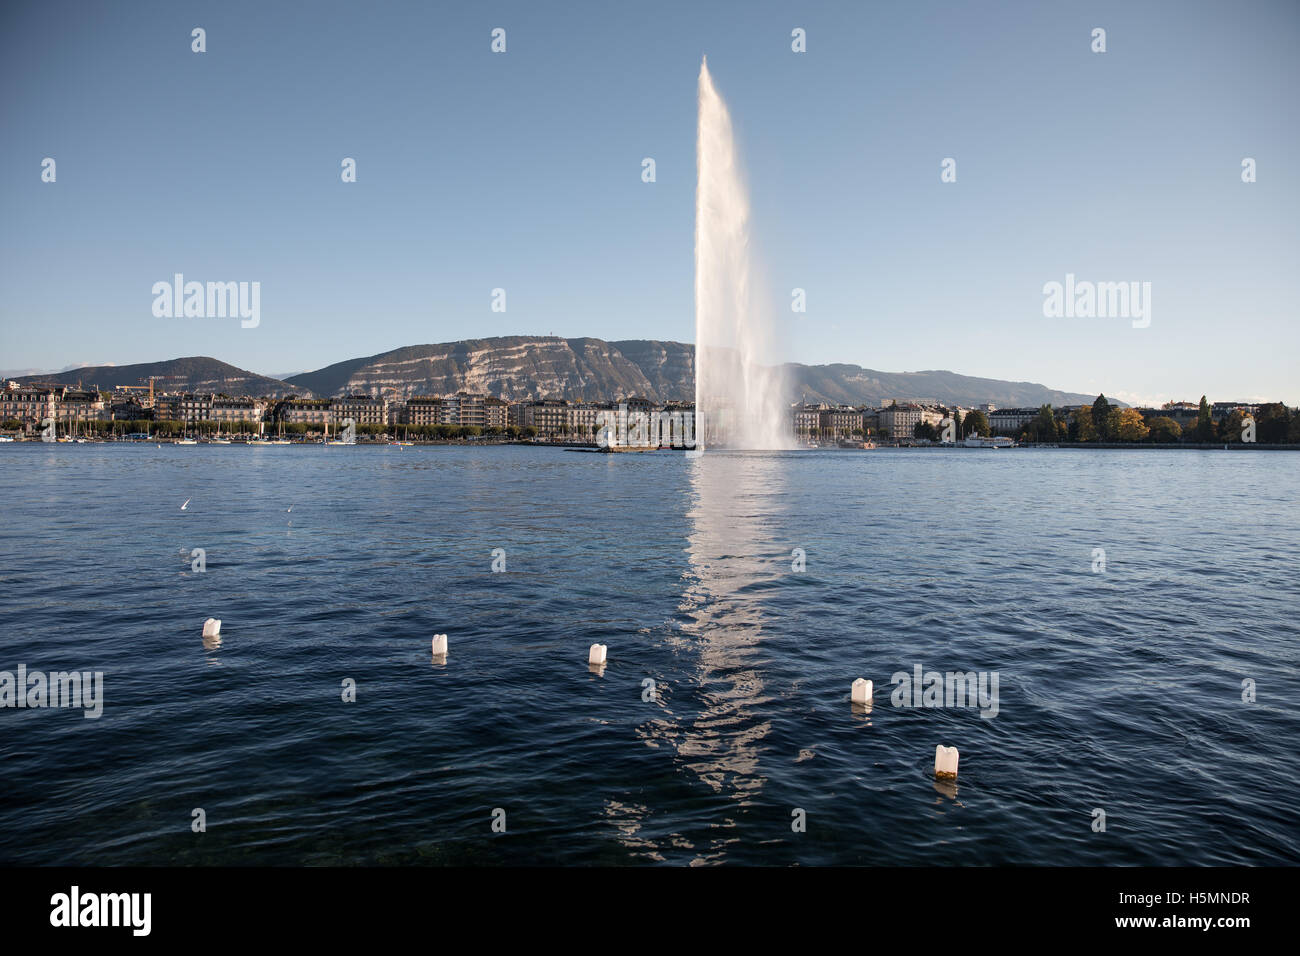 La fontaine du Jet d'eau sur le lac de Genève, Suisse. Banque D'Images